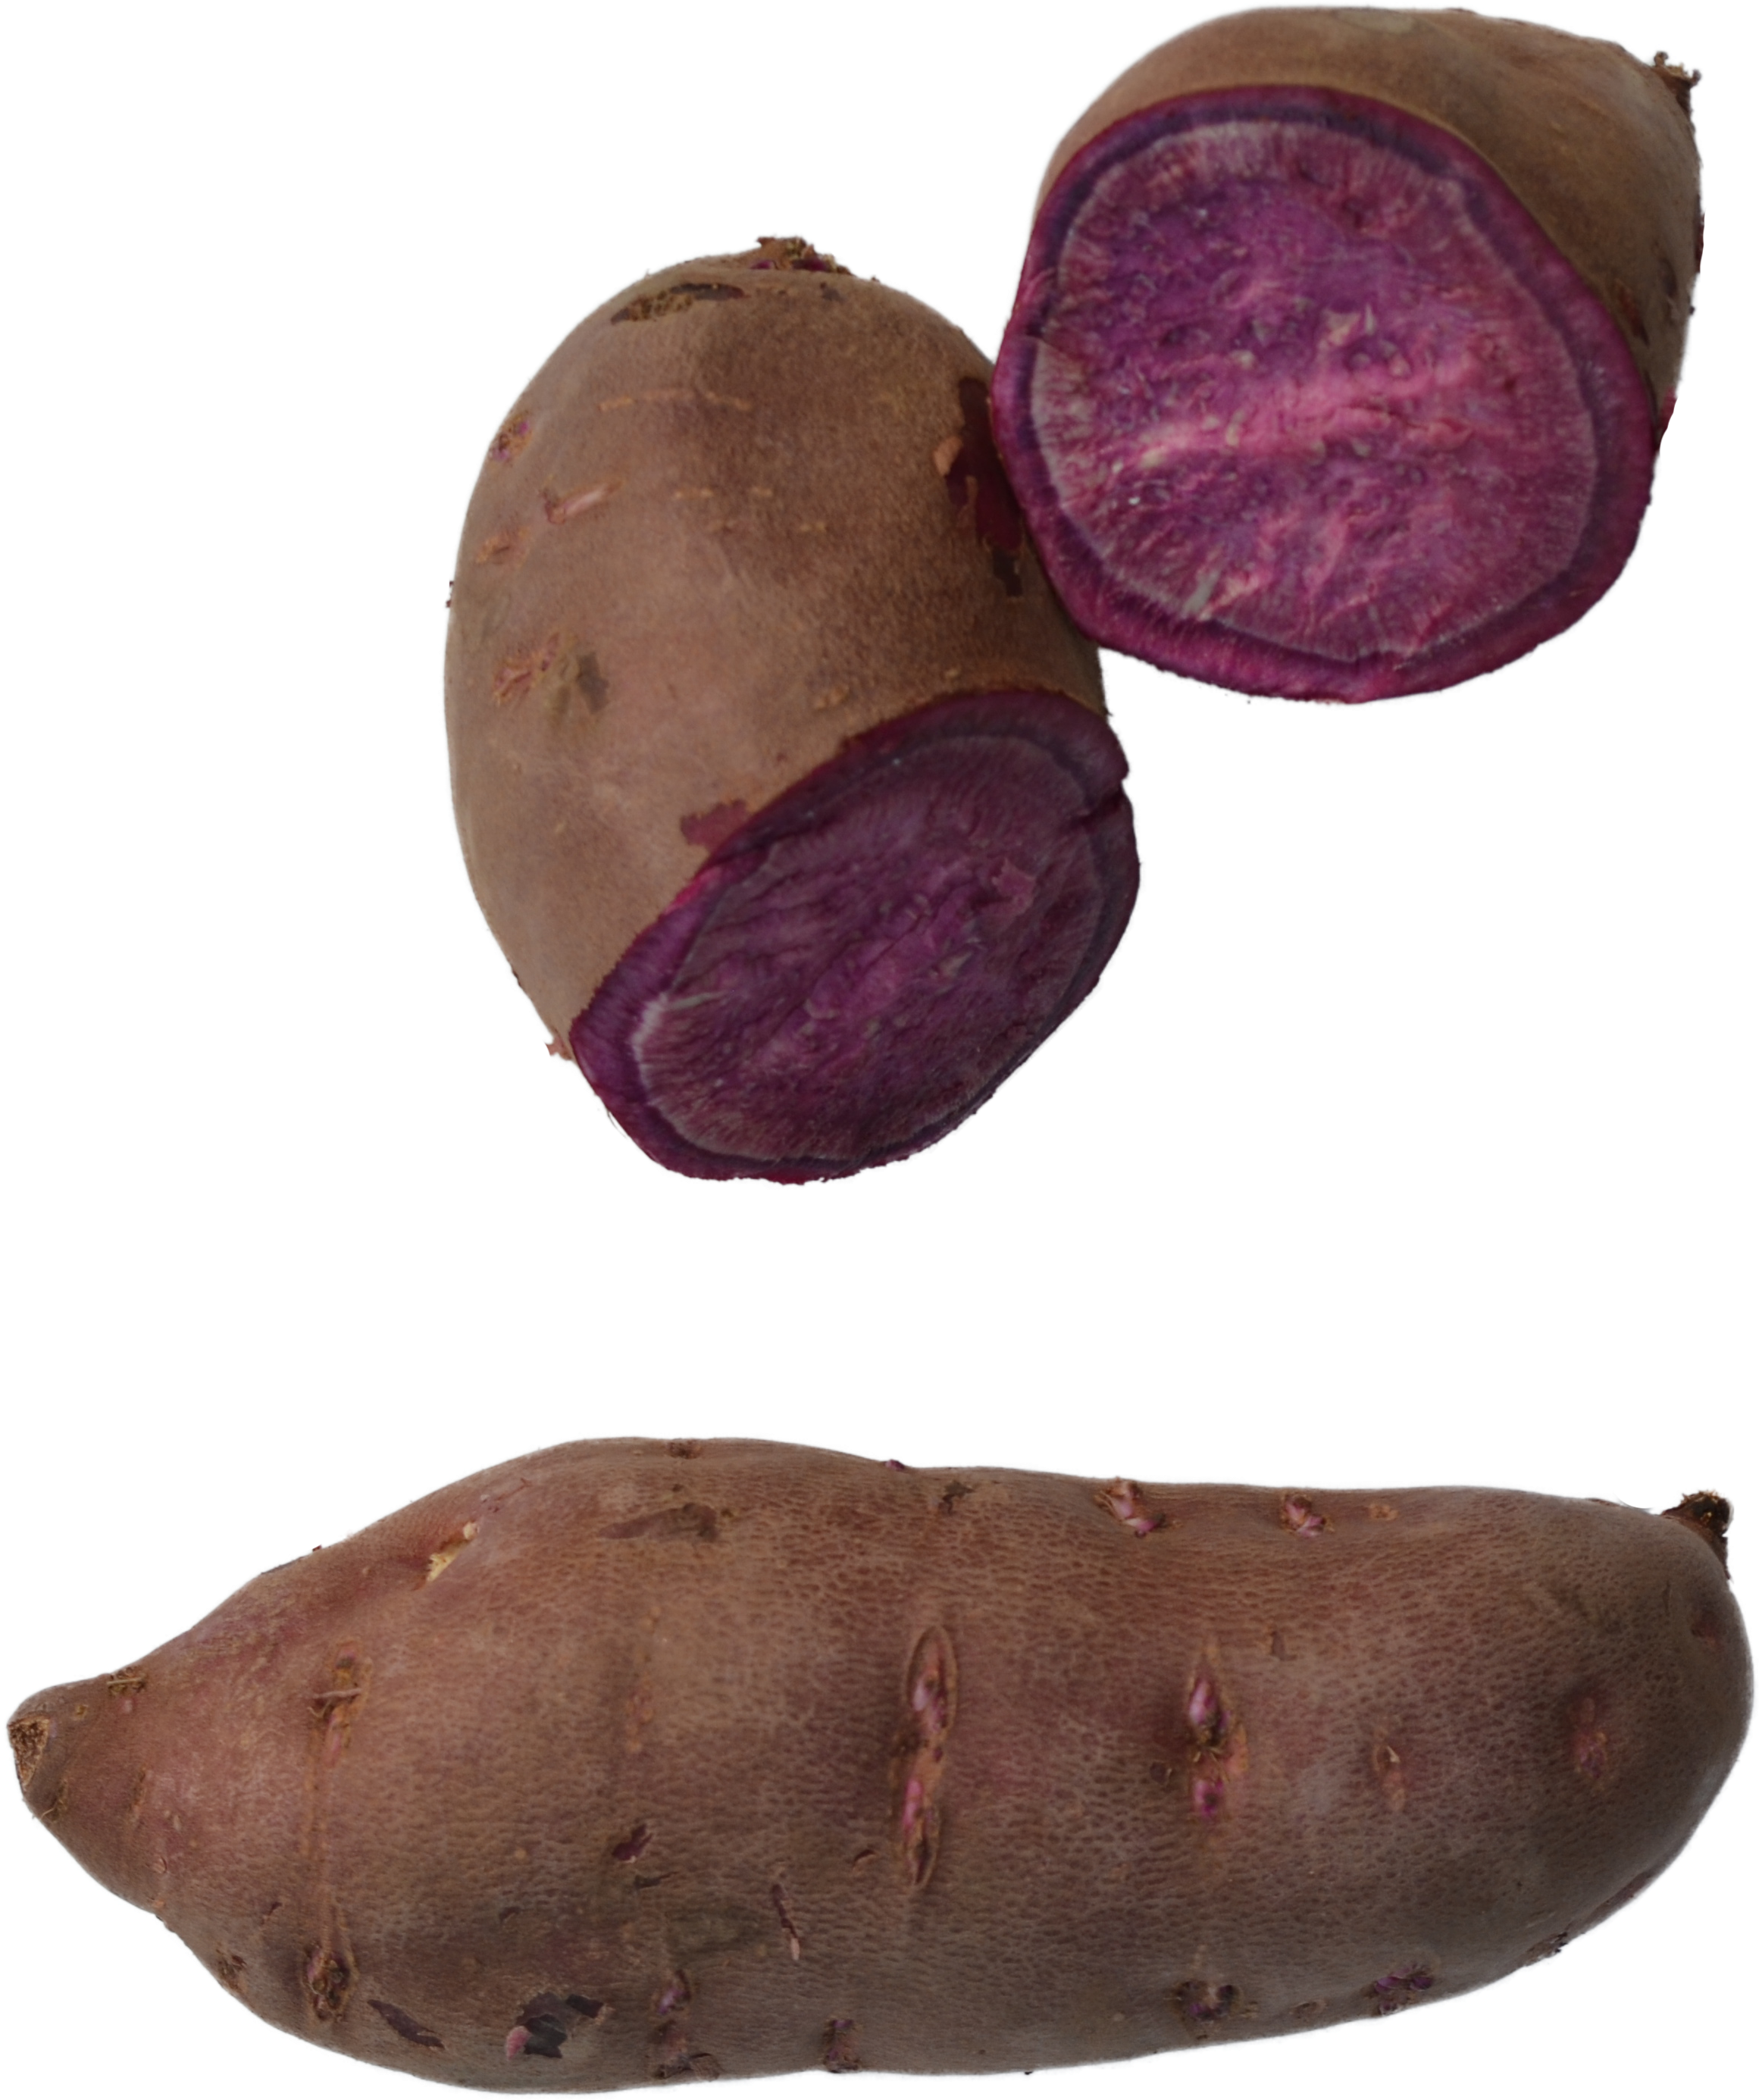 Süßkartoffel, lila Kartoffel